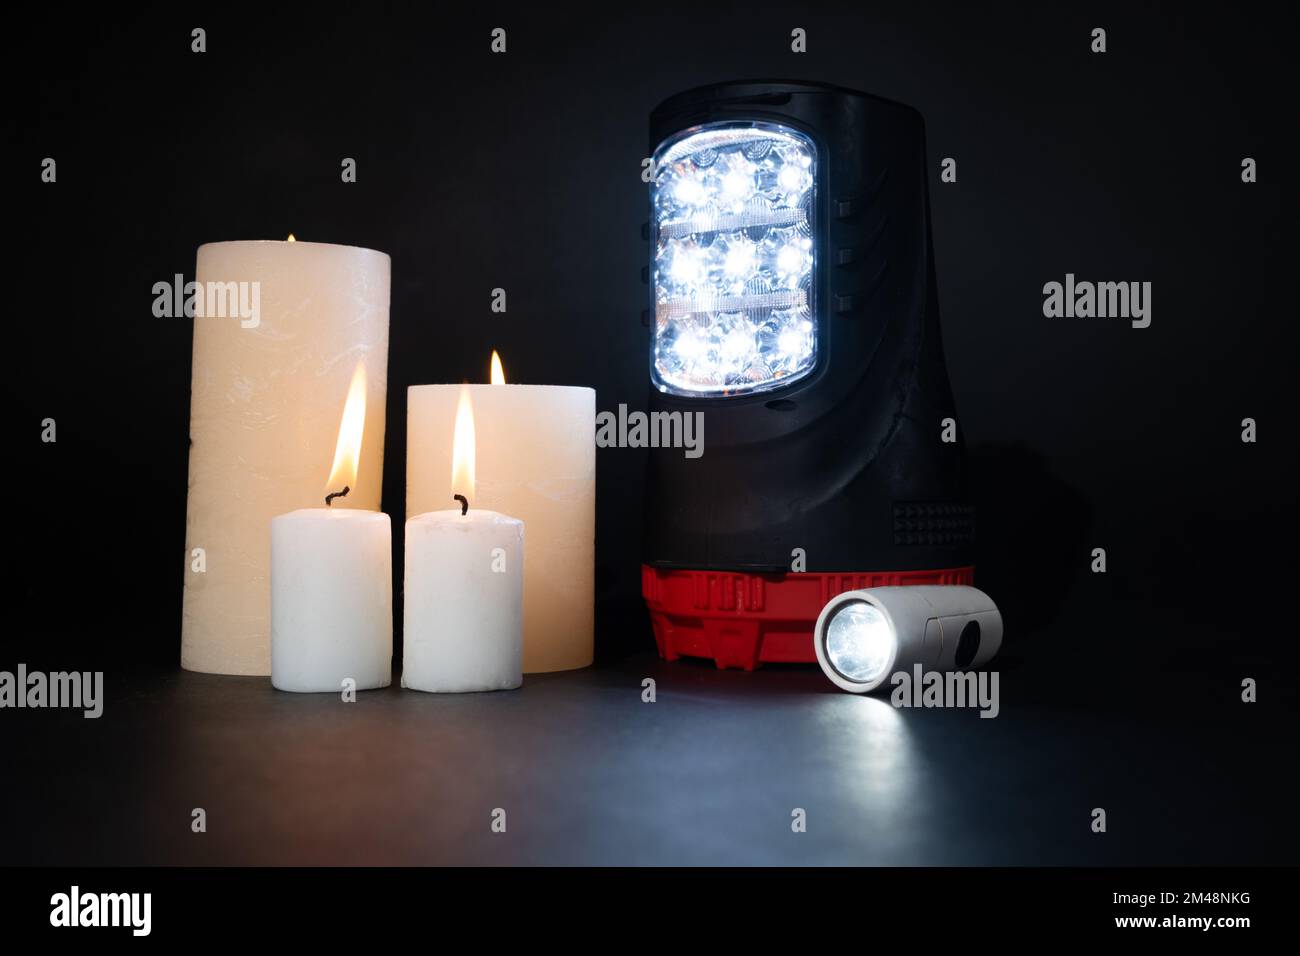 Torce elettriche e candele accese su sfondo nero, fonti alternative di luce e calore Foto Stock